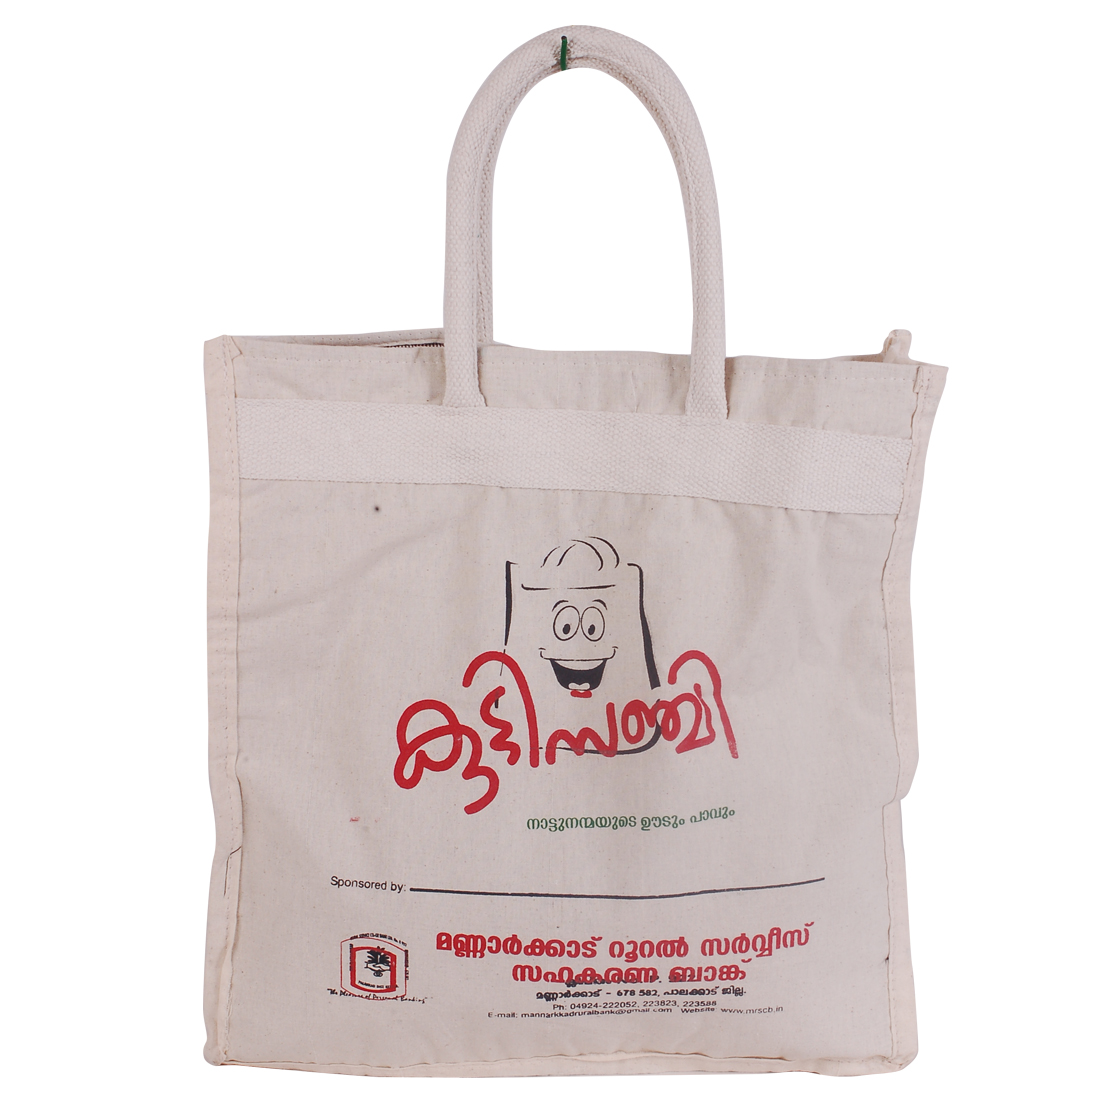 Order Cash Bag Side Online From New Era by sanchi,vadodara